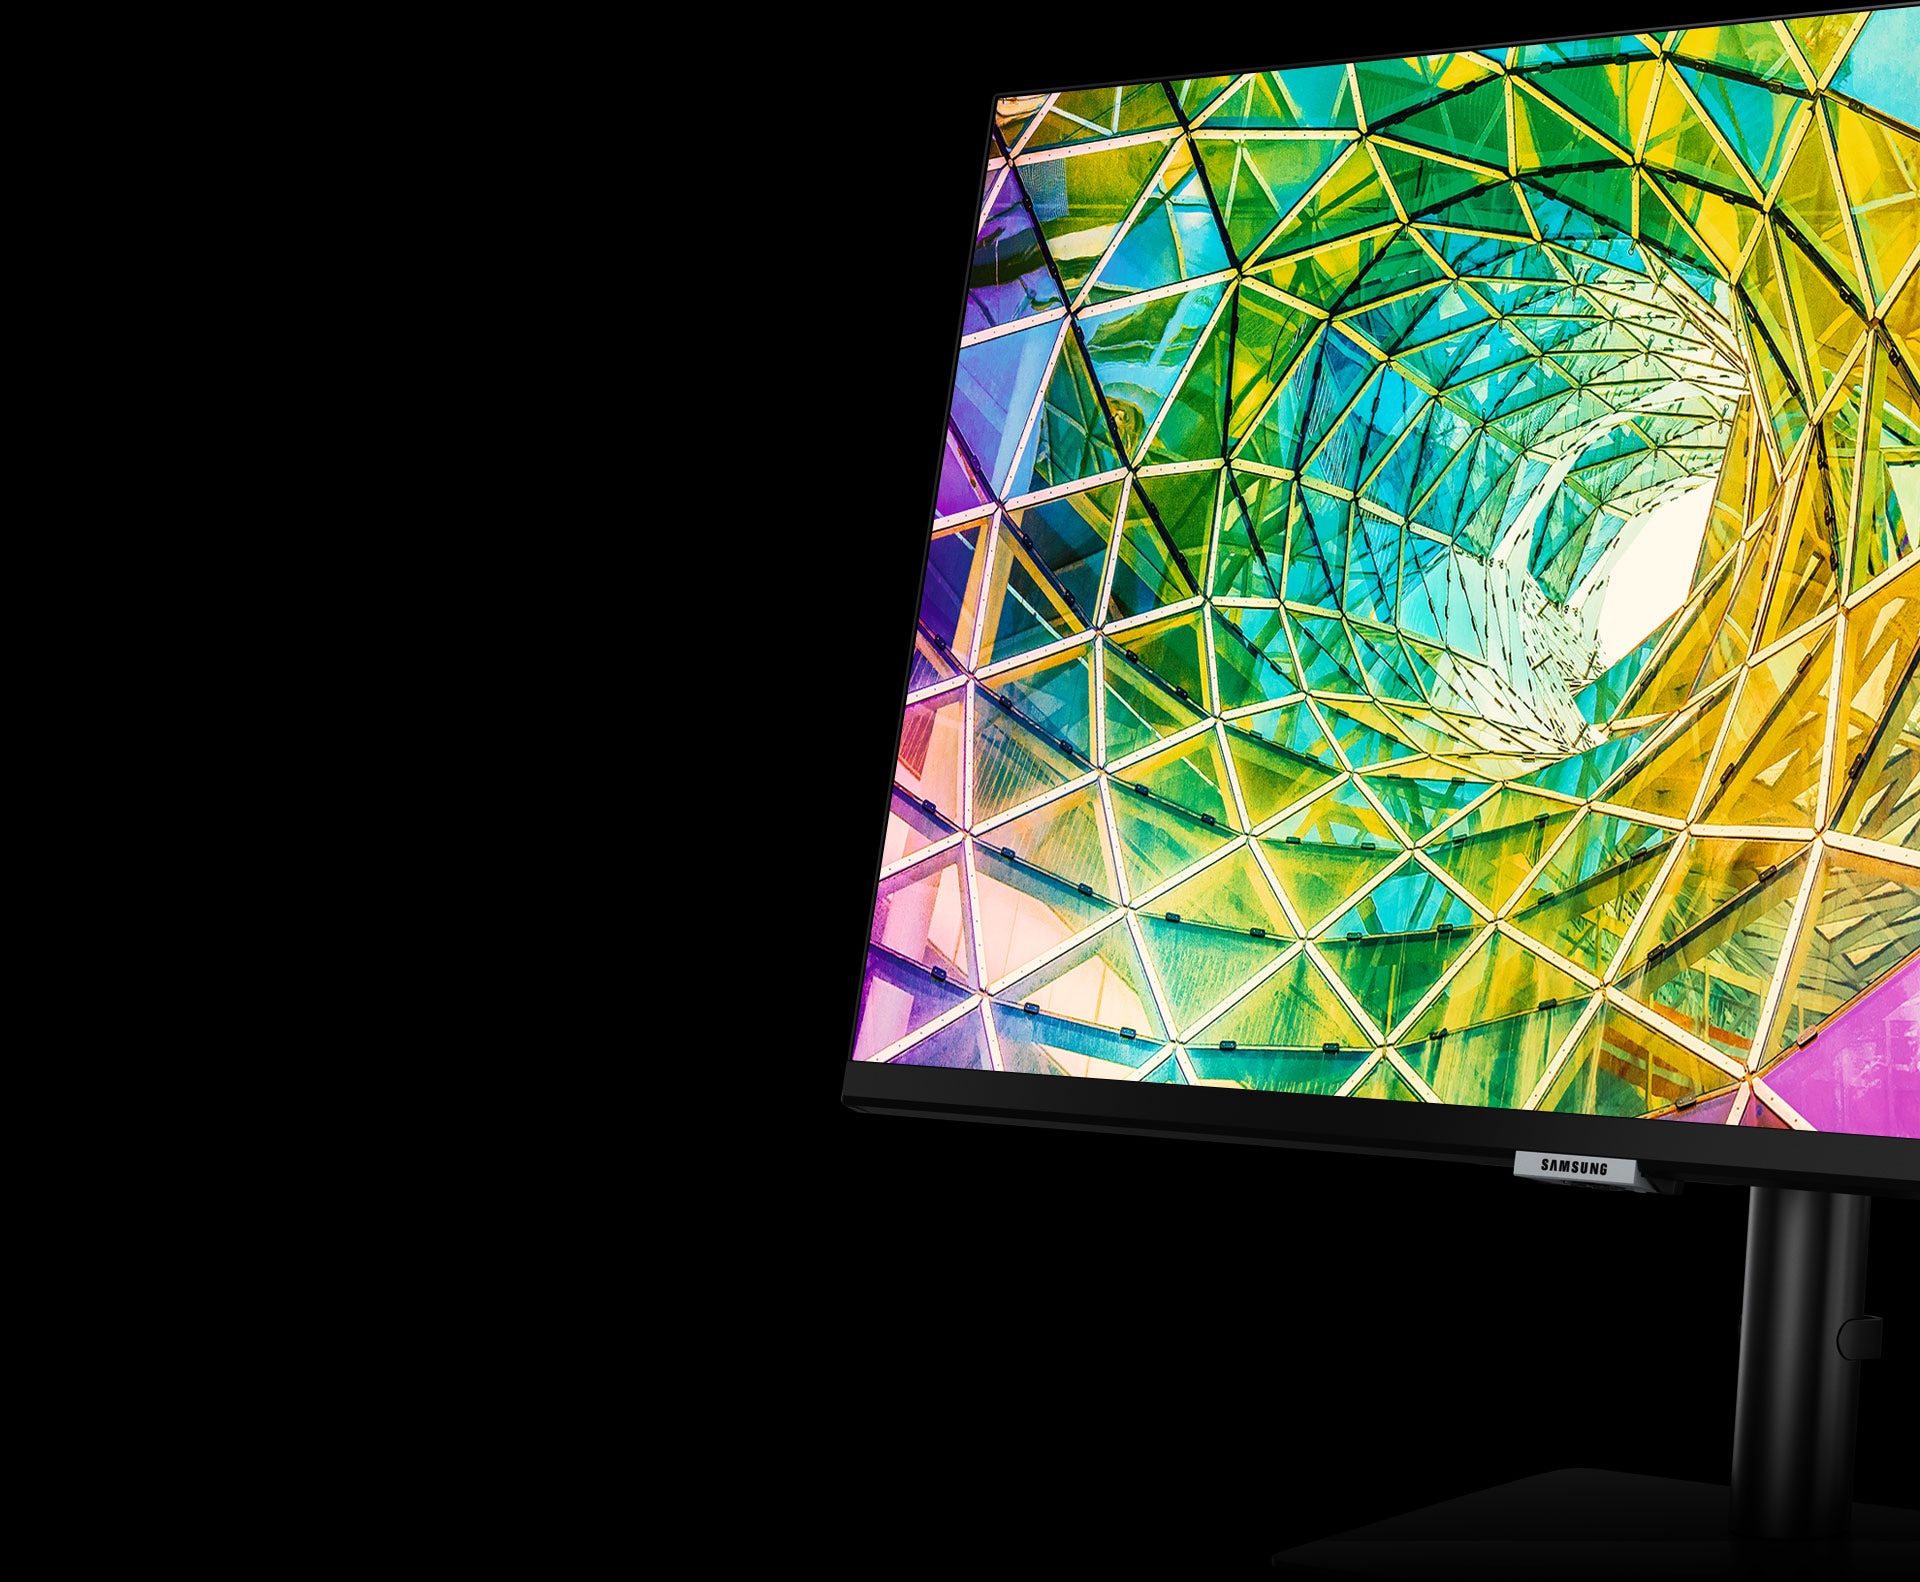 Het monitorscherm toont gedraaid gekleurd glas in felgeel, groen, roze en paars. De monitor wordt naar links gedraaid en iets naar achteren gekanteld met behulp van de schermstandaard.